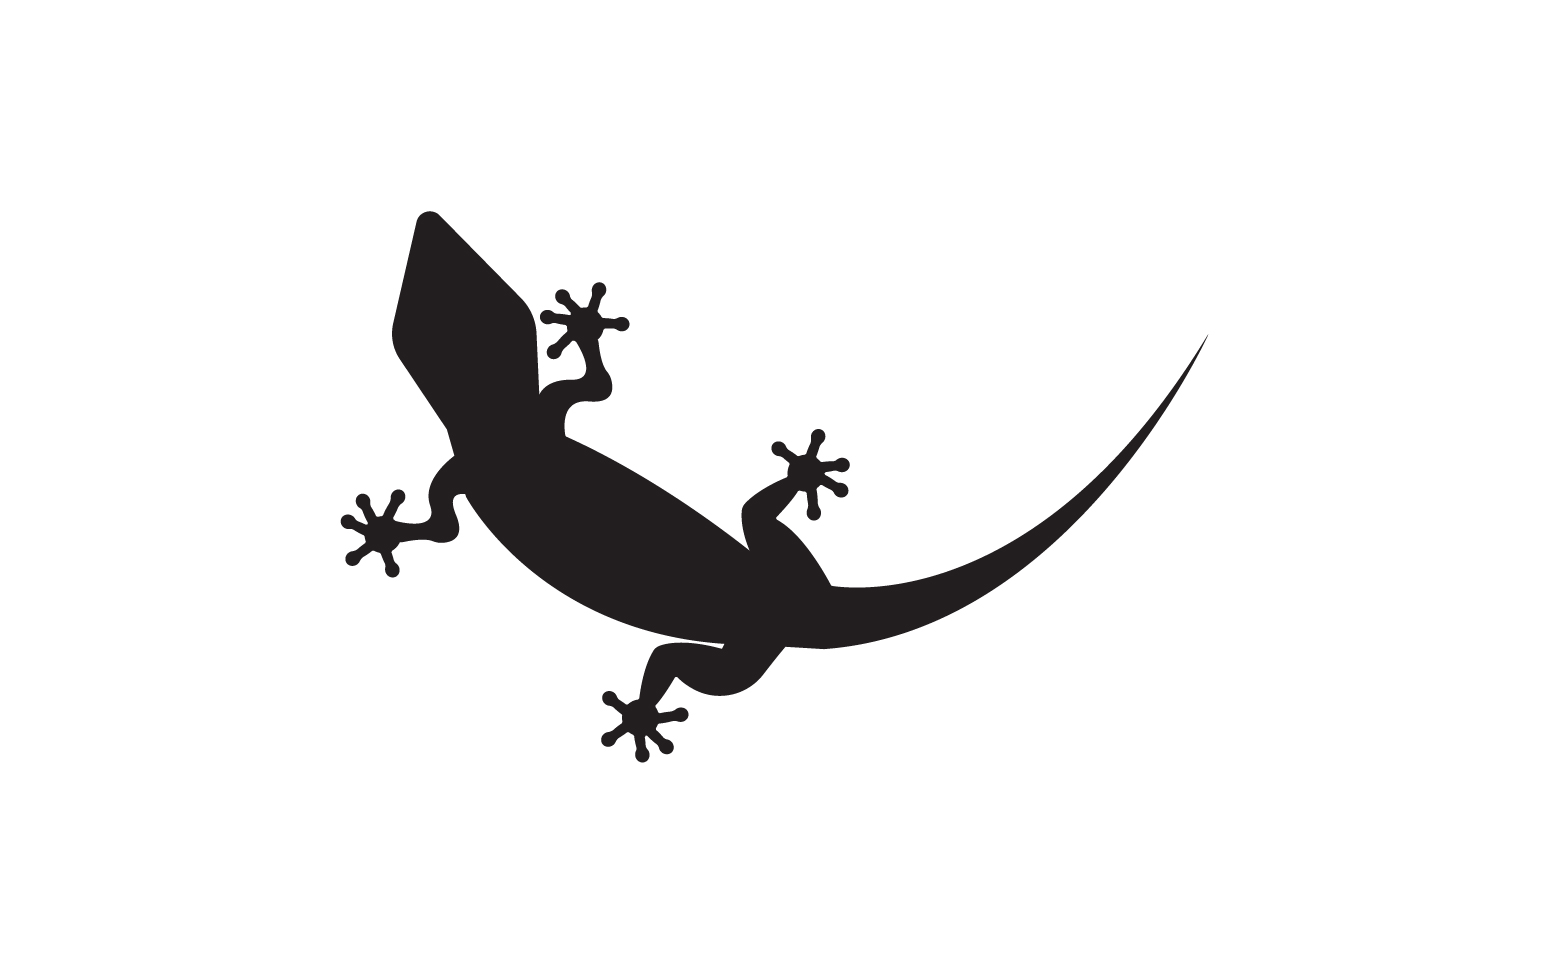 Lizard chameleon home lizard logo v54